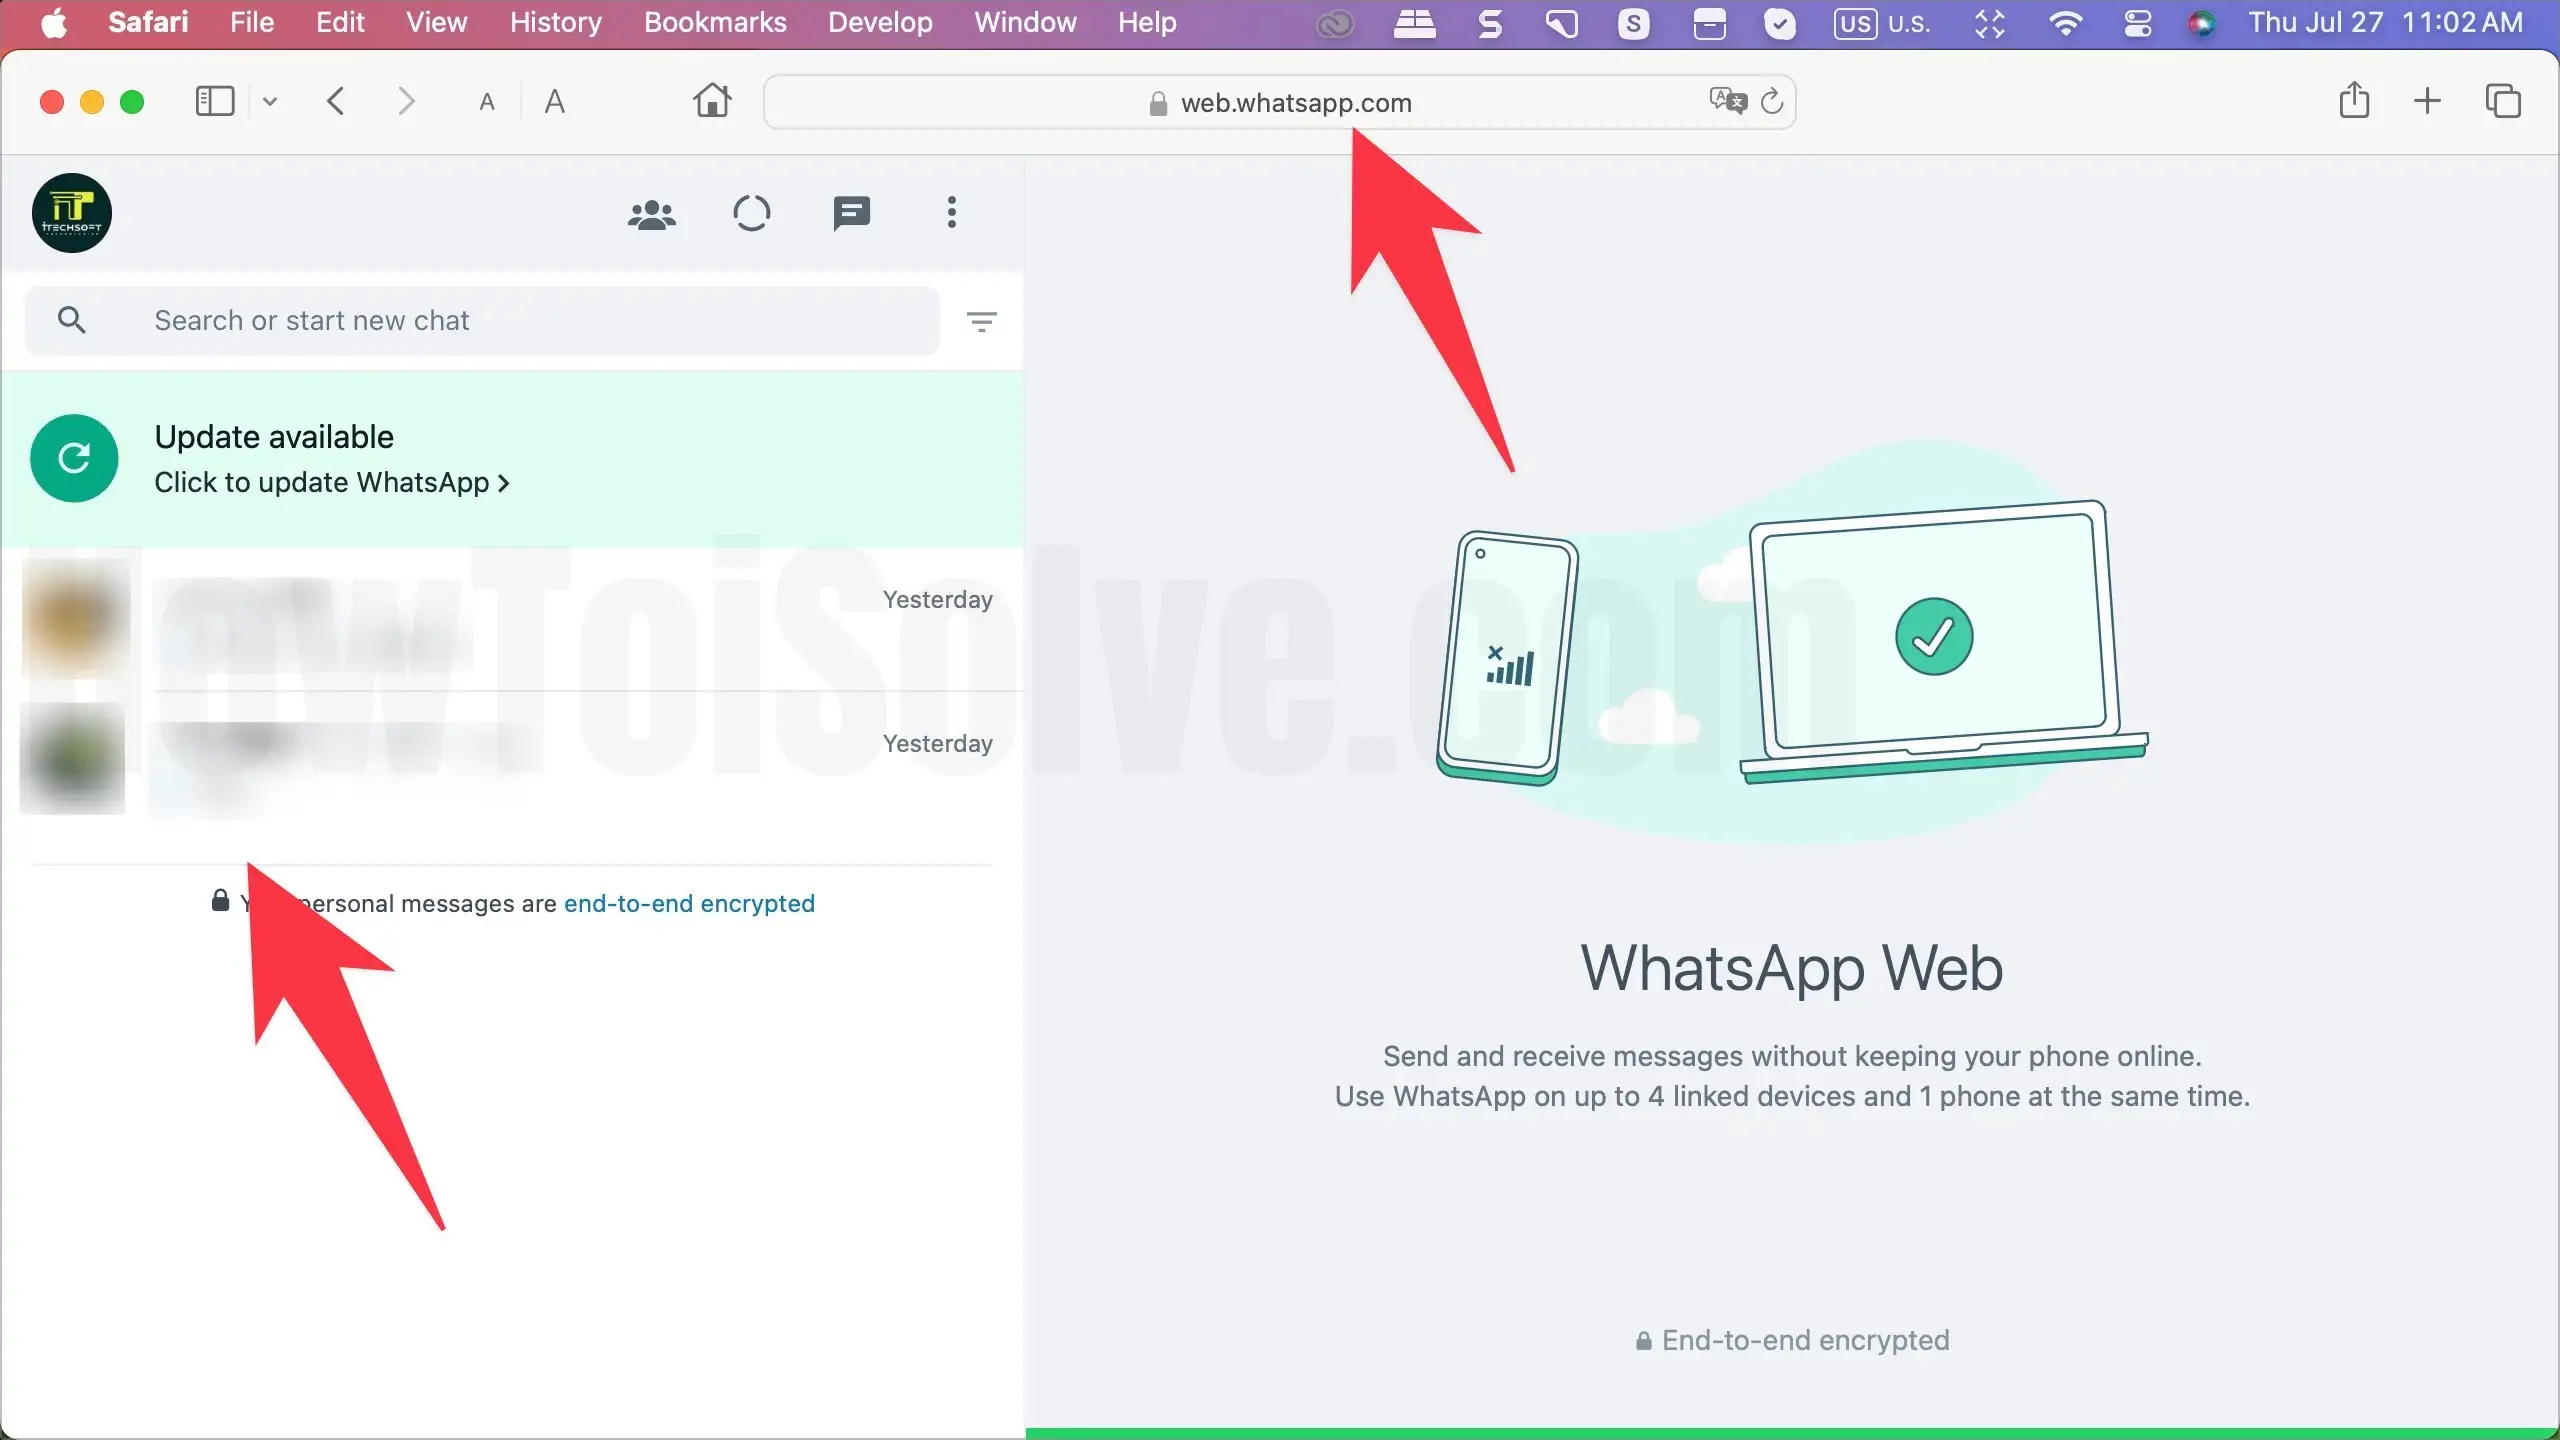 WhatsApp Web is open on Browser